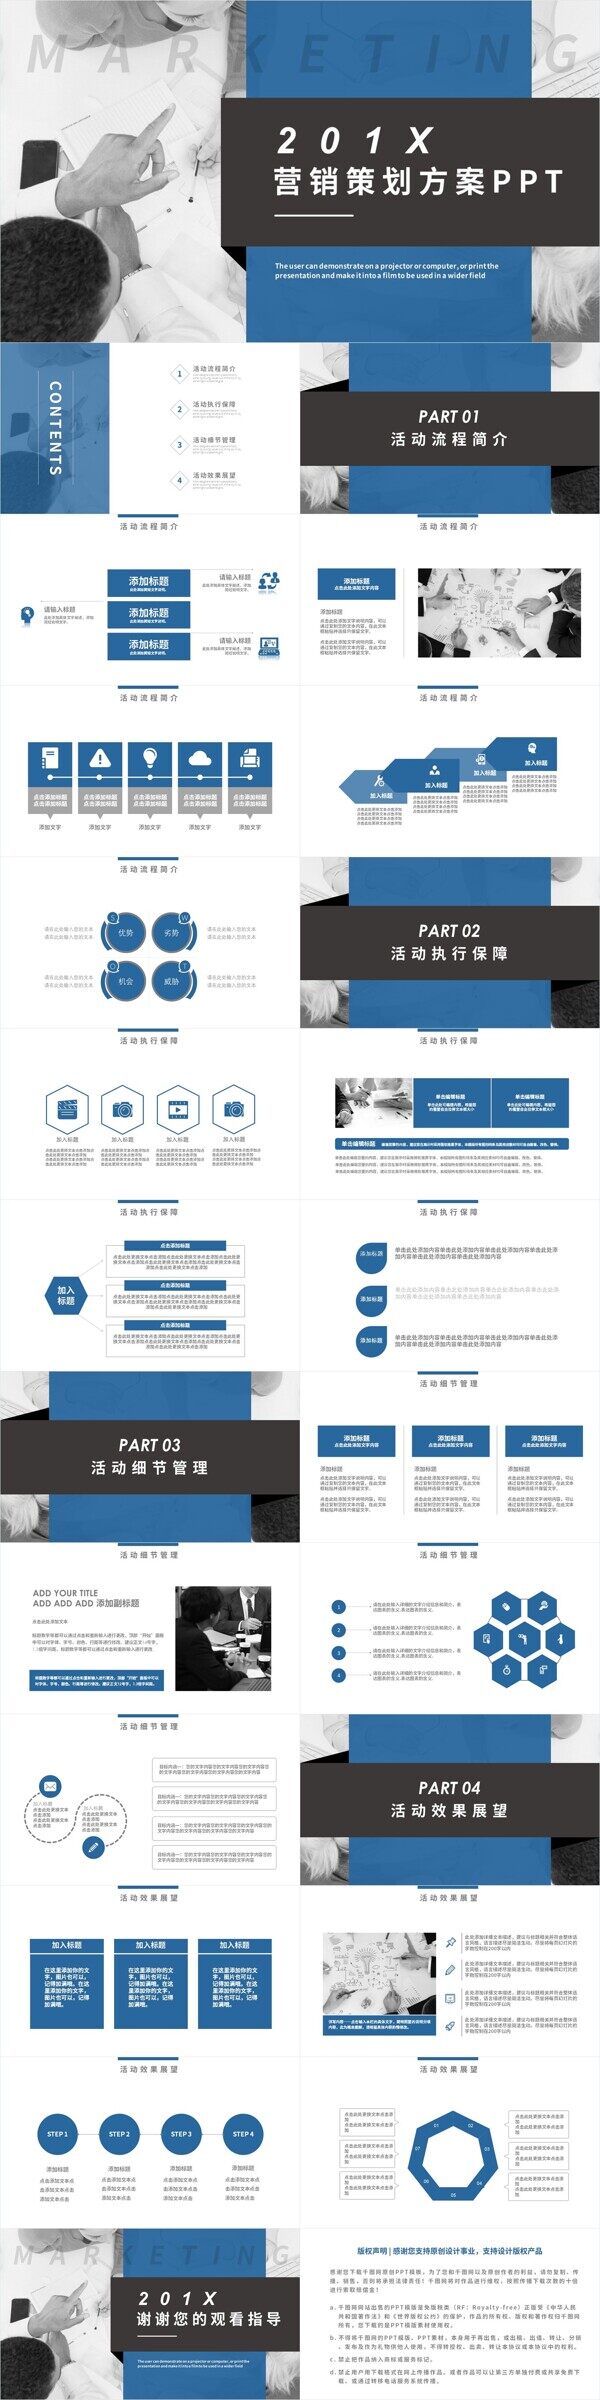 蓝色商务通用营销策划方案动态PPT模板